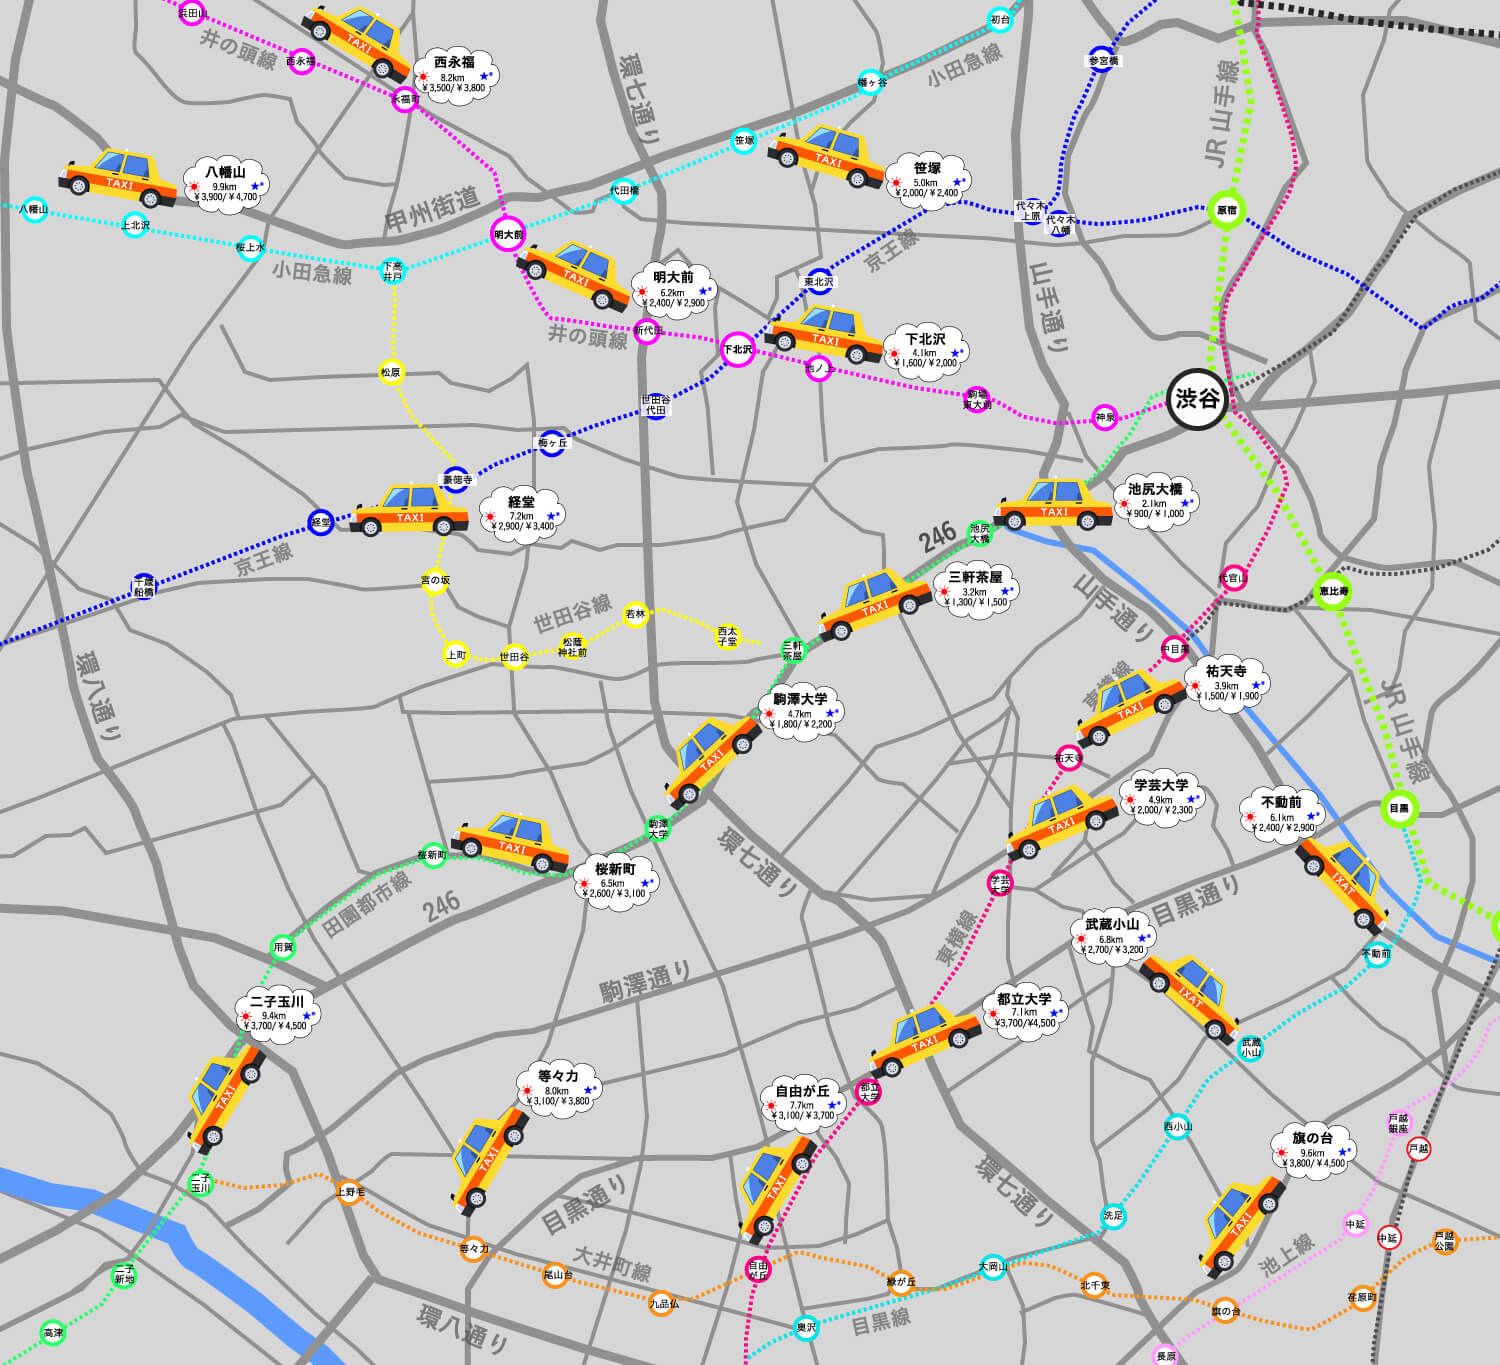 この画像には渋谷からのタクシーマップです。世田谷区、目黒区、品川区の駅までいくらで行けるかがまとめてあります。